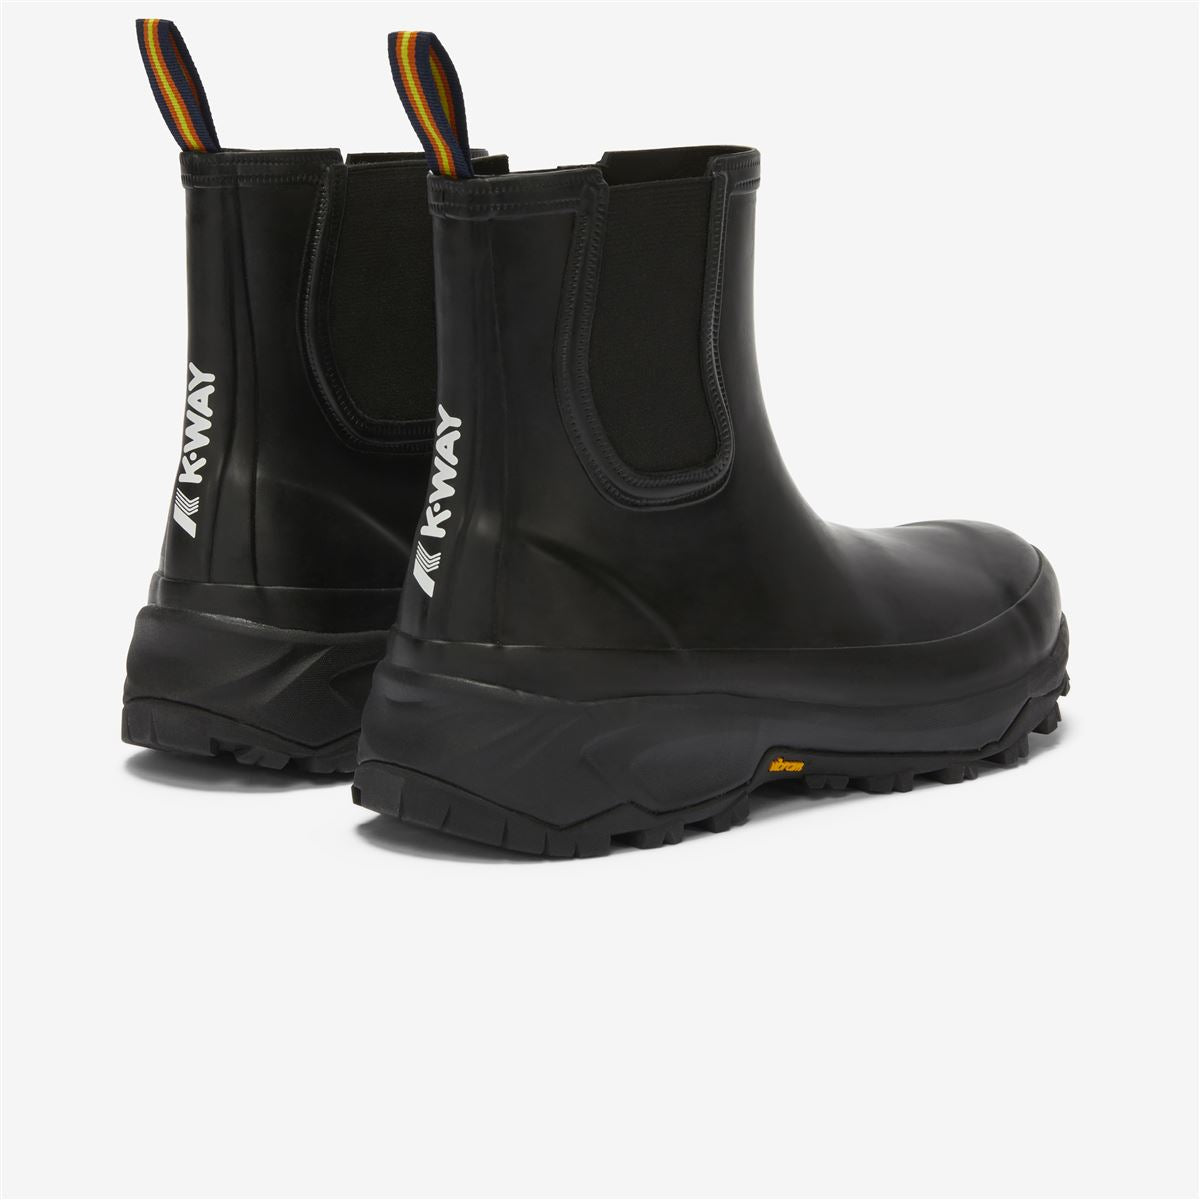 RAIMOND - Rubber Boots - Mid Cut - Unisex - Black Pure